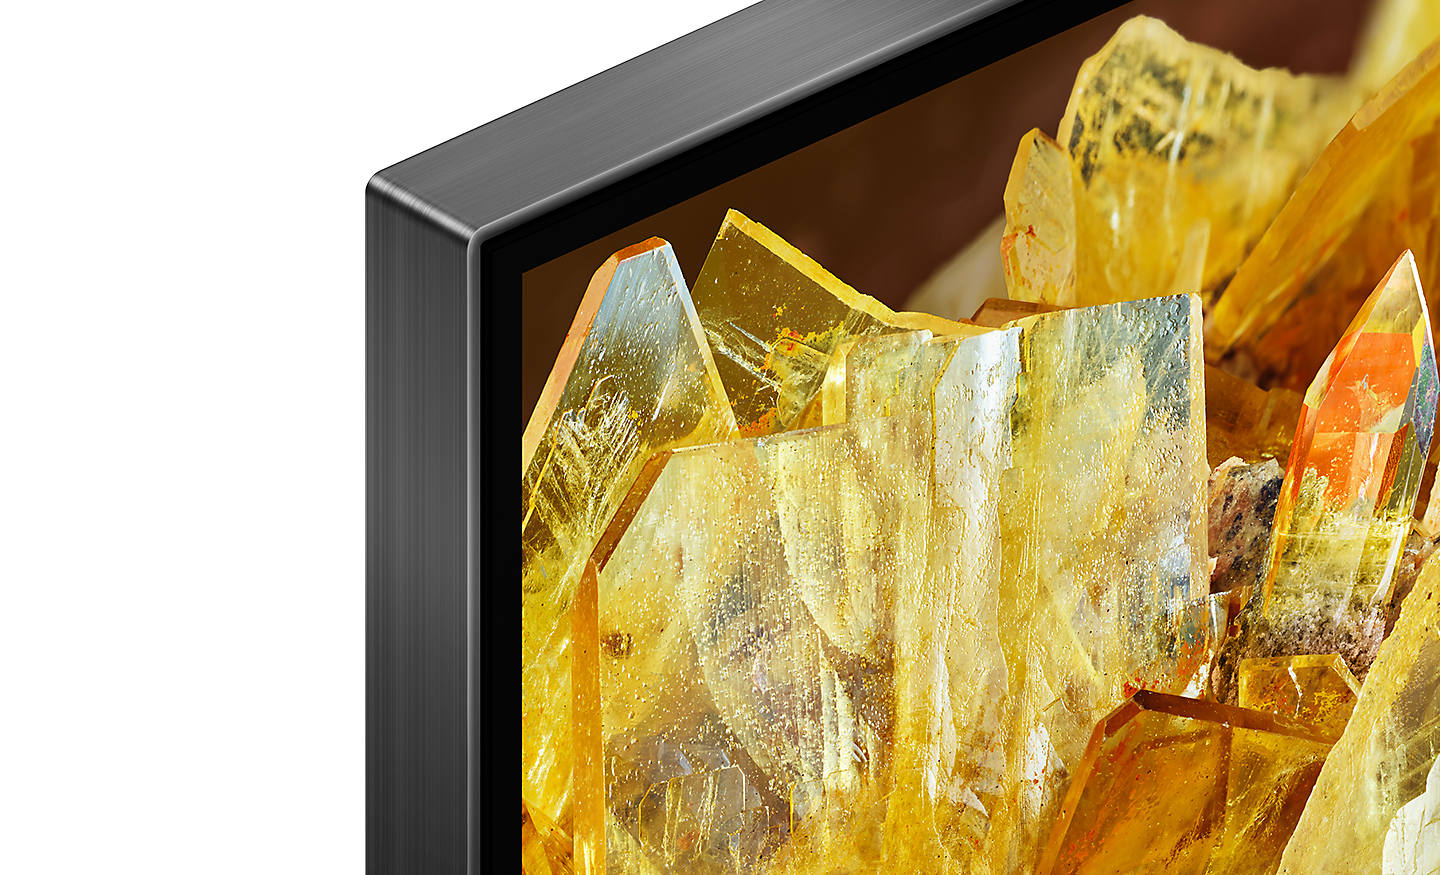 Roh televízora, na obrazovke sa zobrazujú zlaté kryštály